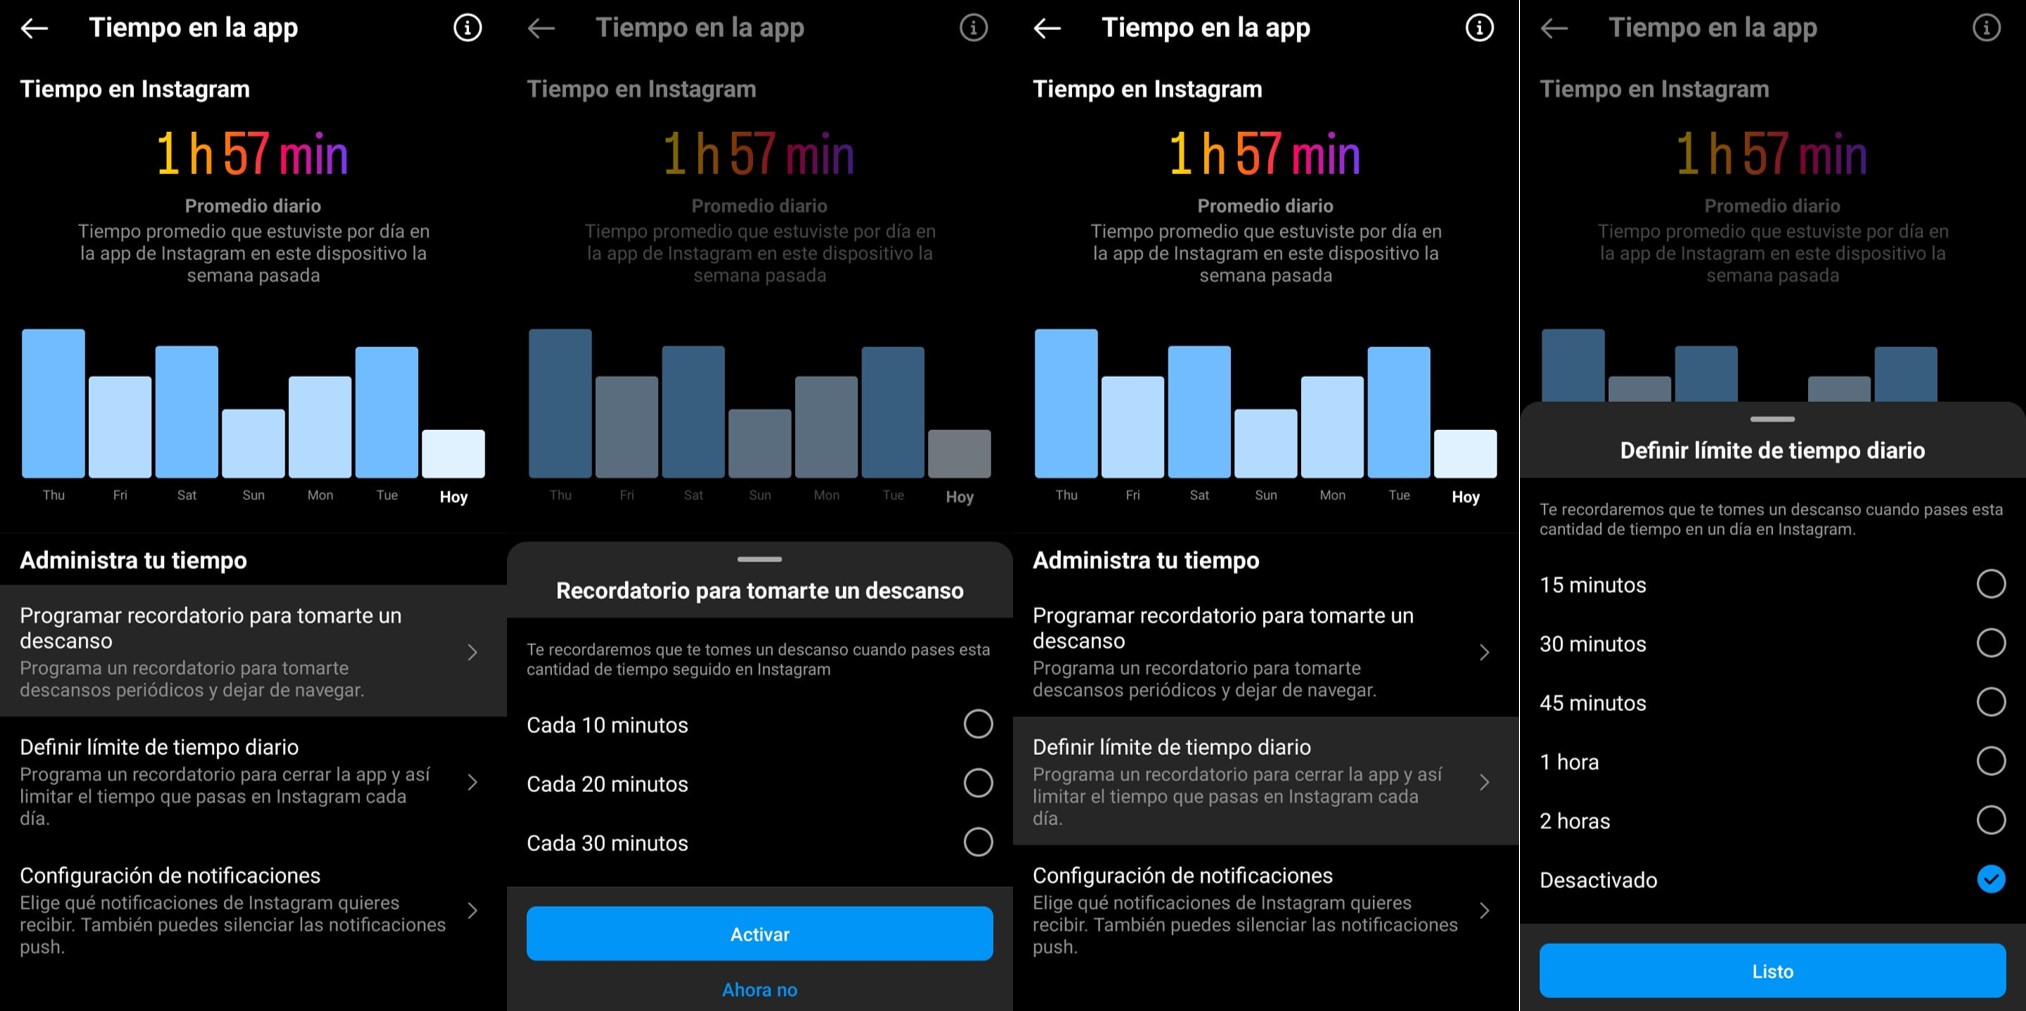 Instagram permite identificar cuánto tiempo pasó una persona en la aplicación diariamente, establecer un promedio semanal y gestionar alertas para reducir la cantidad de horas dentro de la plataforma. (Infobae)